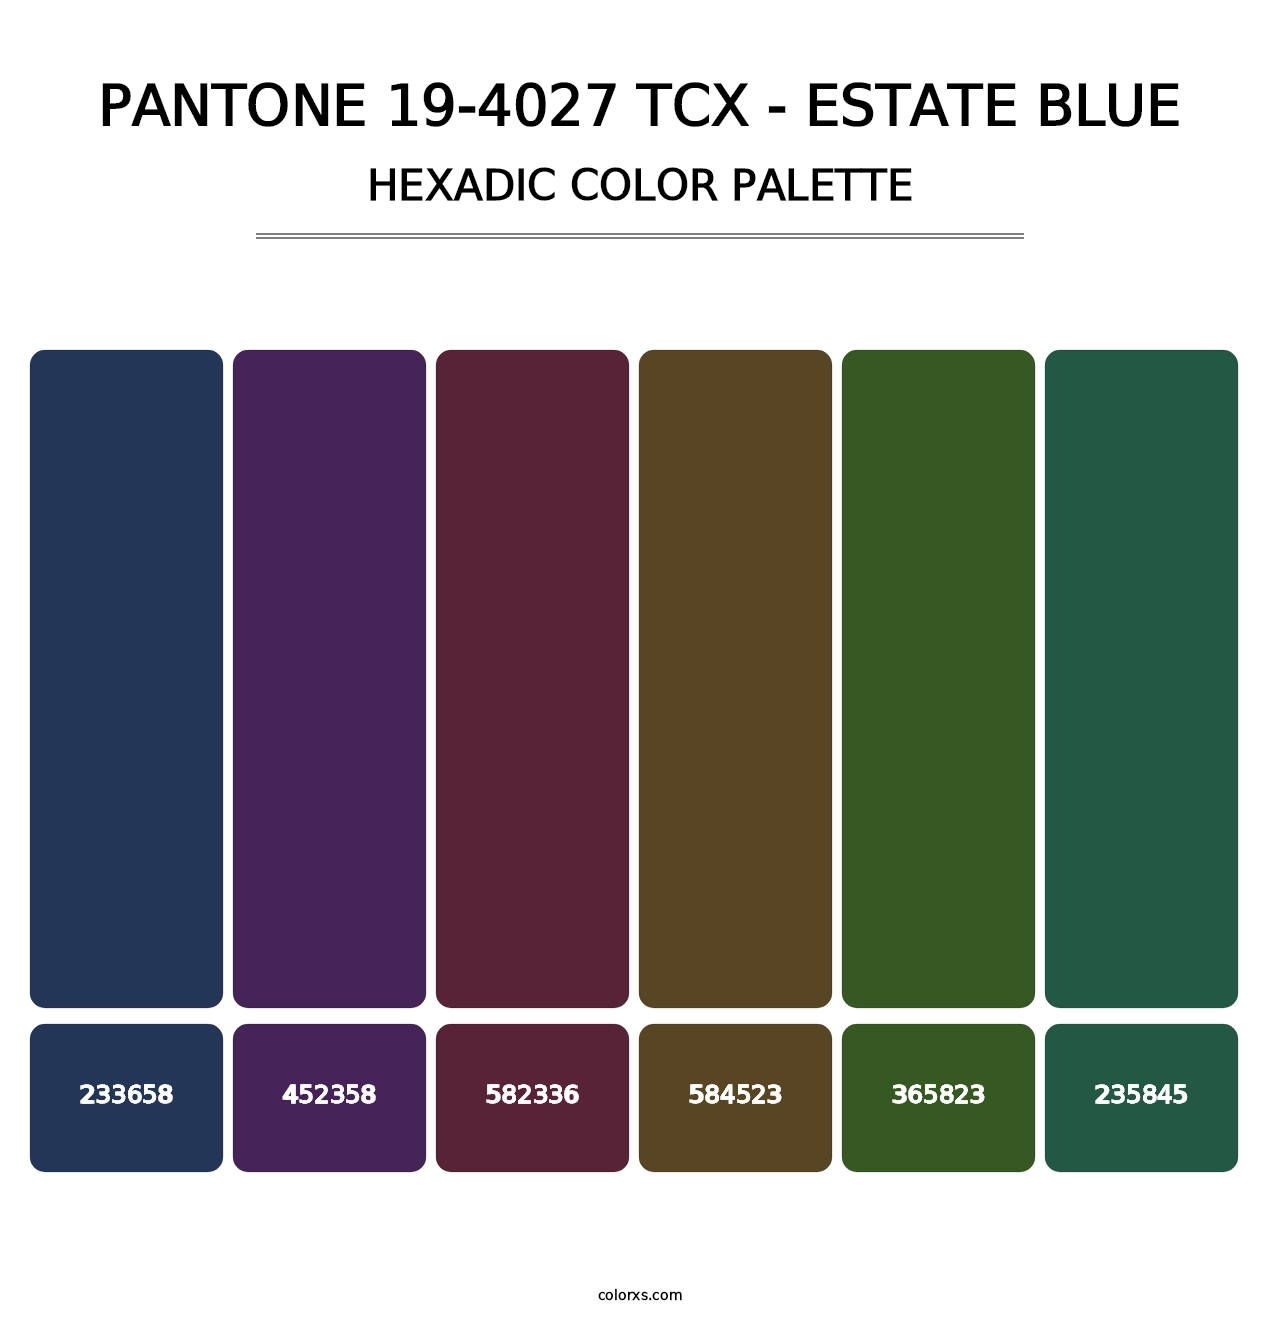 PANTONE 19-4027 TCX - Estate Blue - Hexadic Color Palette